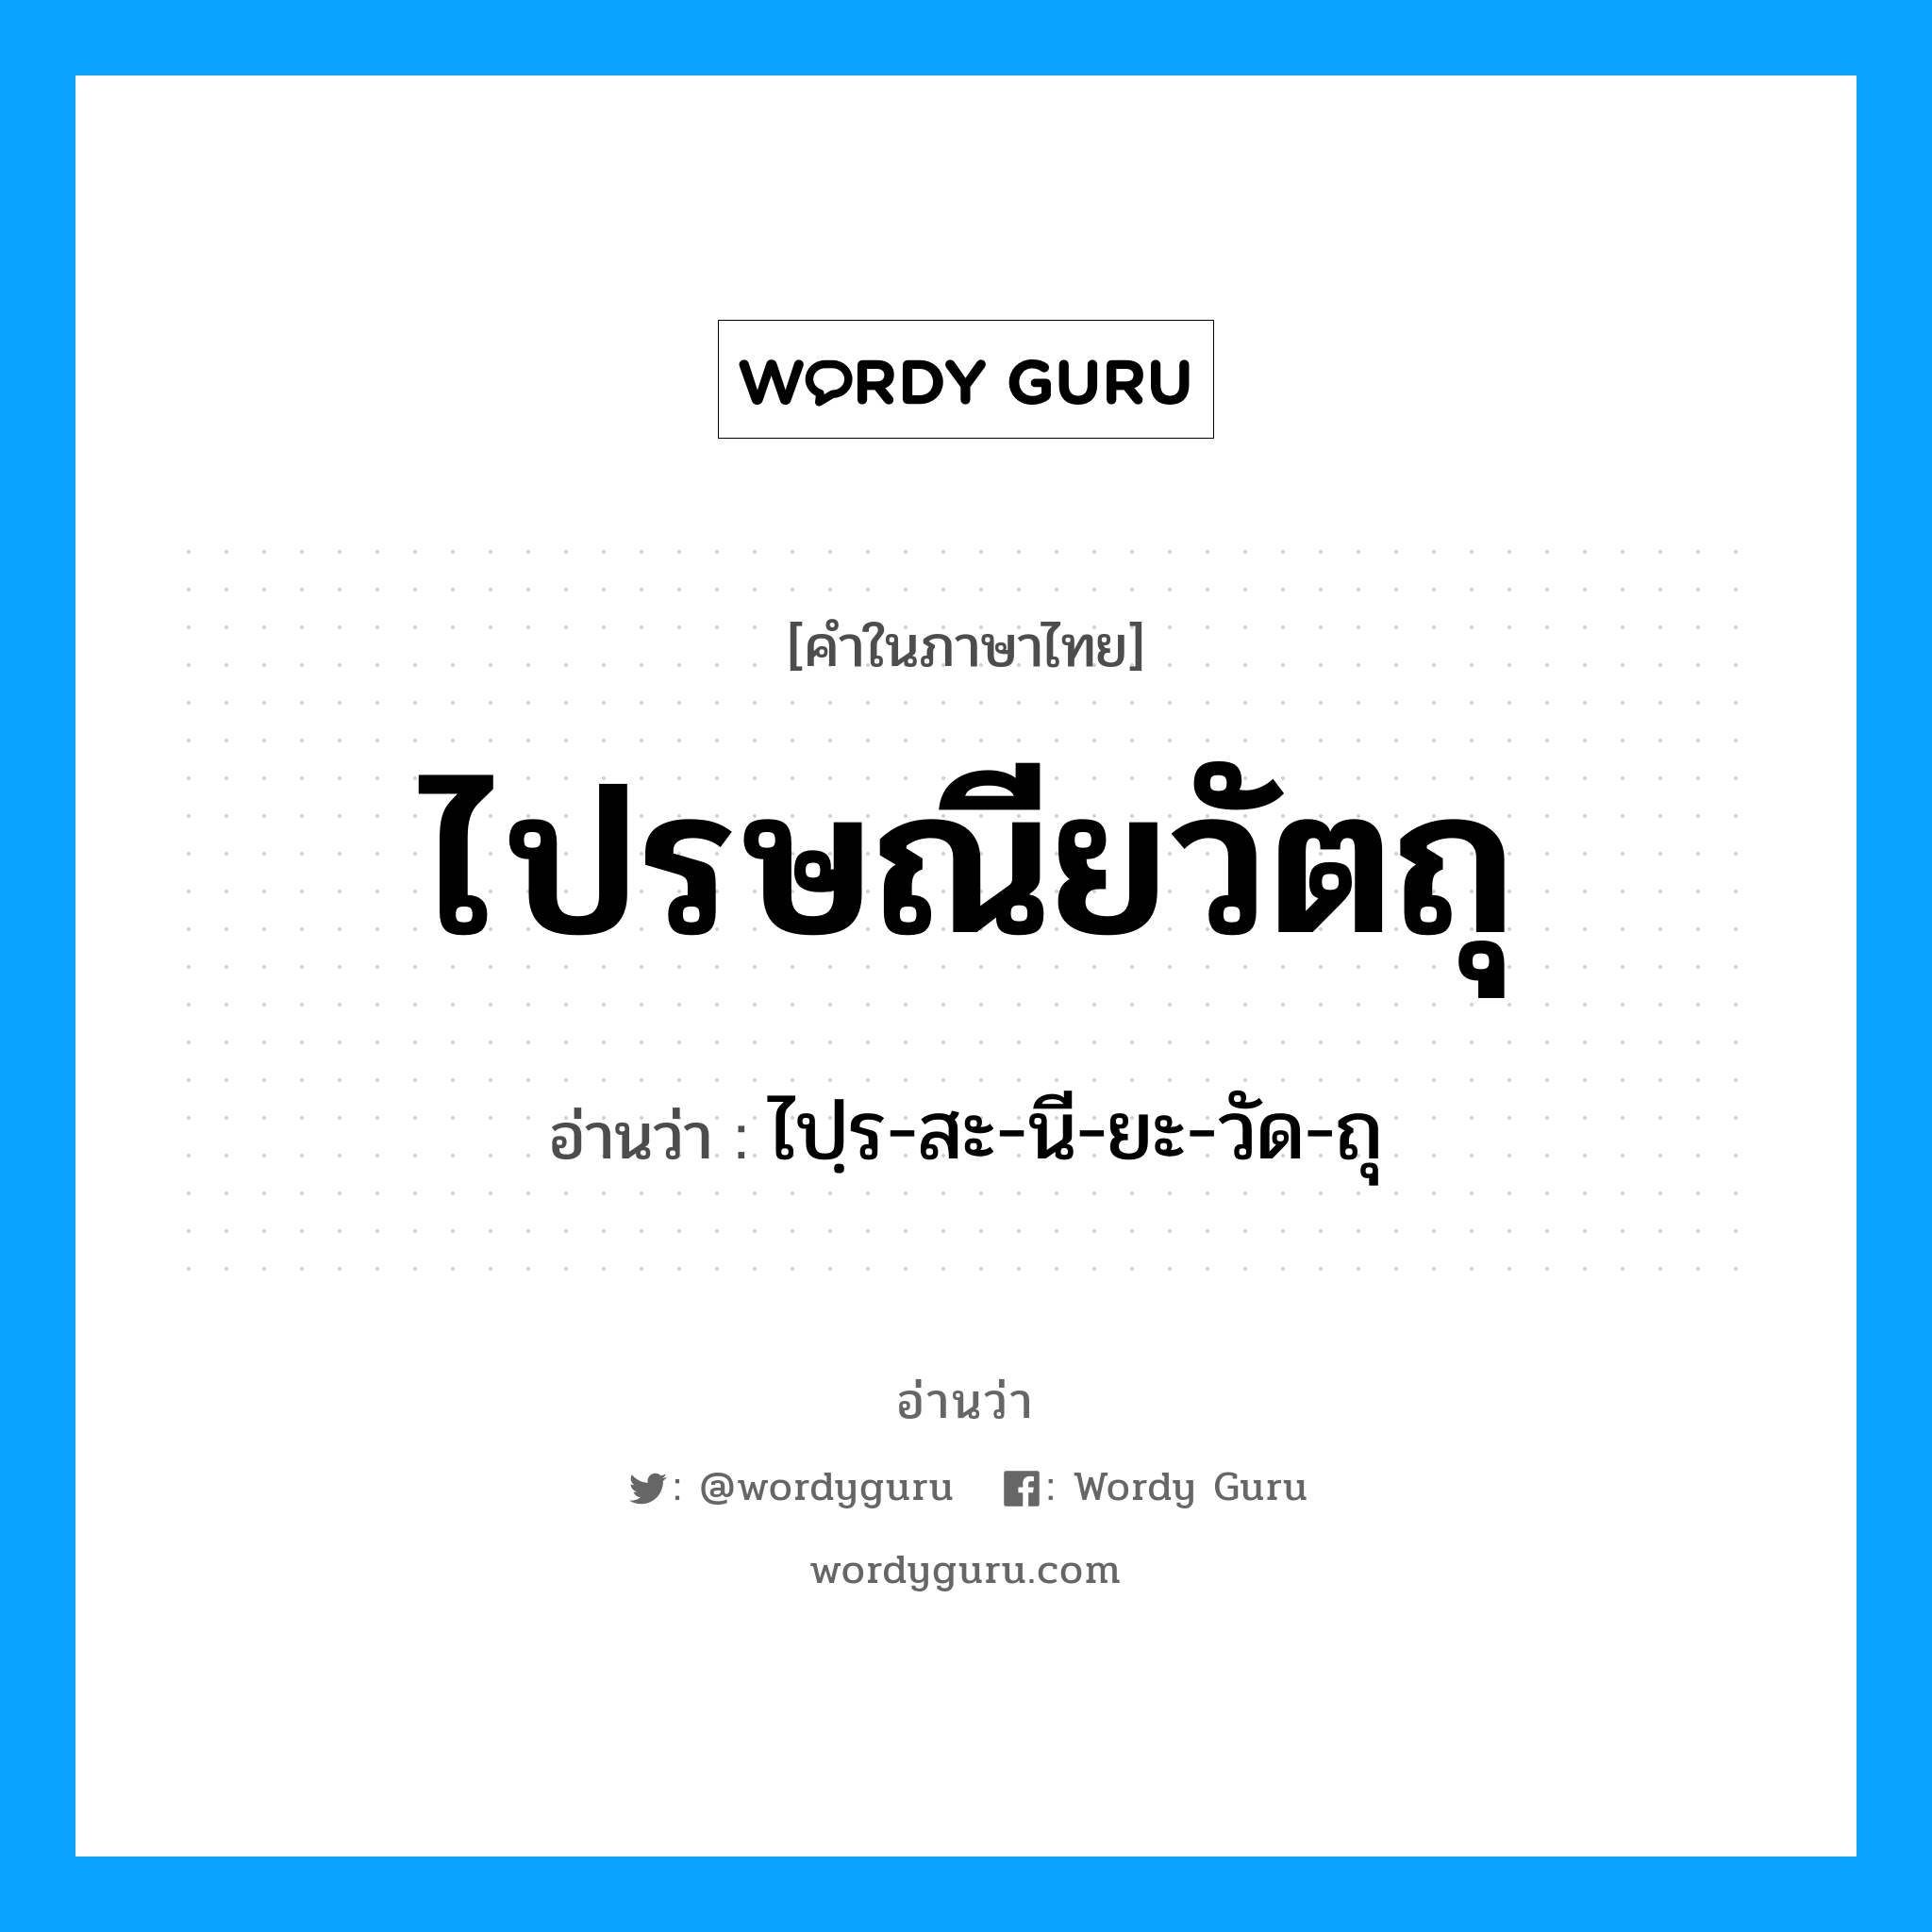 ไปฺร-สะ-นี-ยะ-วัด-ถุ เป็นคำอ่านของคำไหน?, คำในภาษาไทย ไปฺร-สะ-นี-ยะ-วัด-ถุ อ่านว่า ไปรษณียวัตถุ